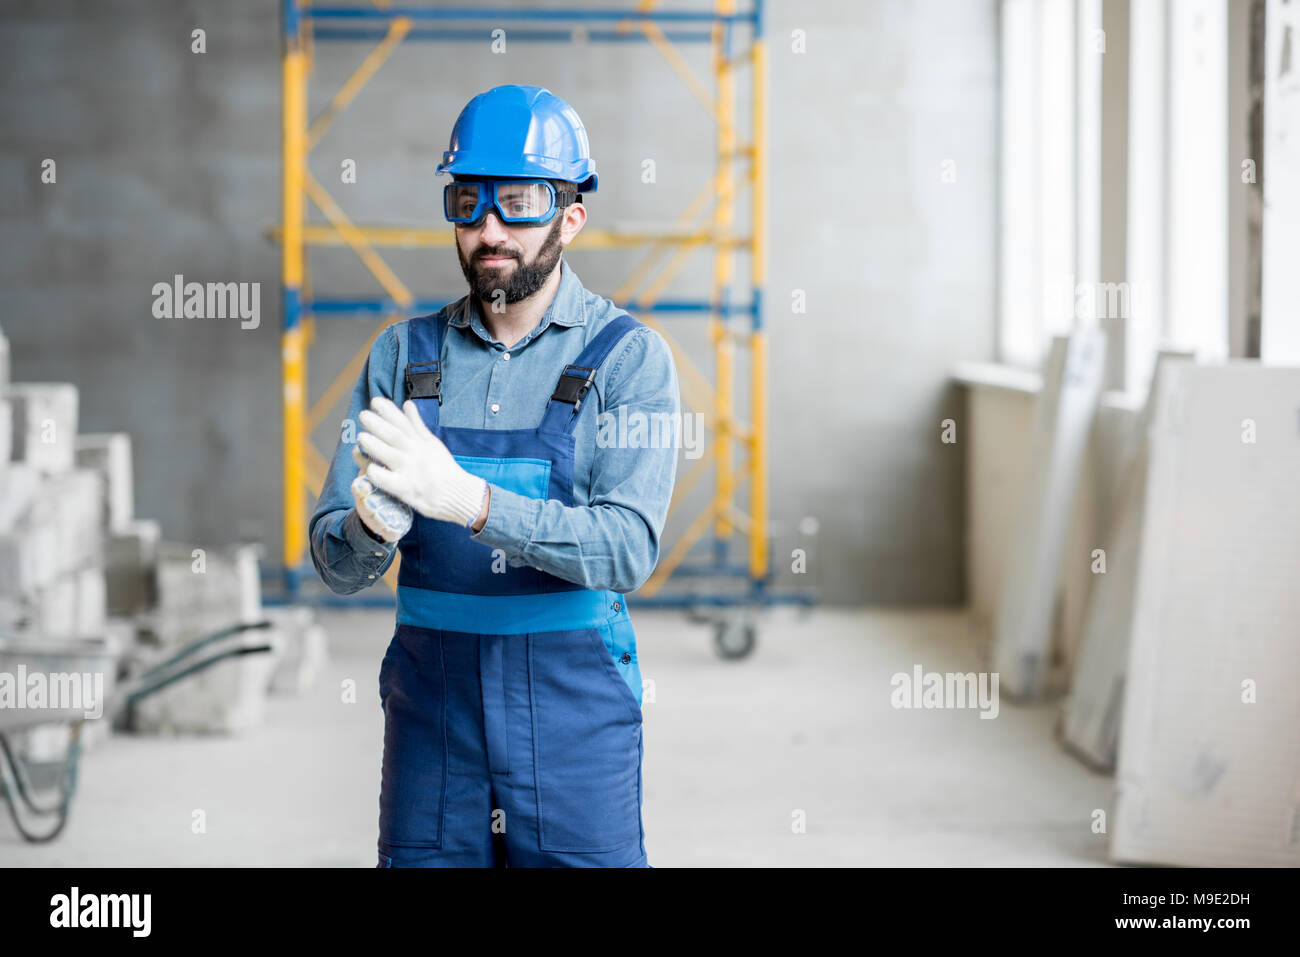 Builder in uniform indoors Stock Photo